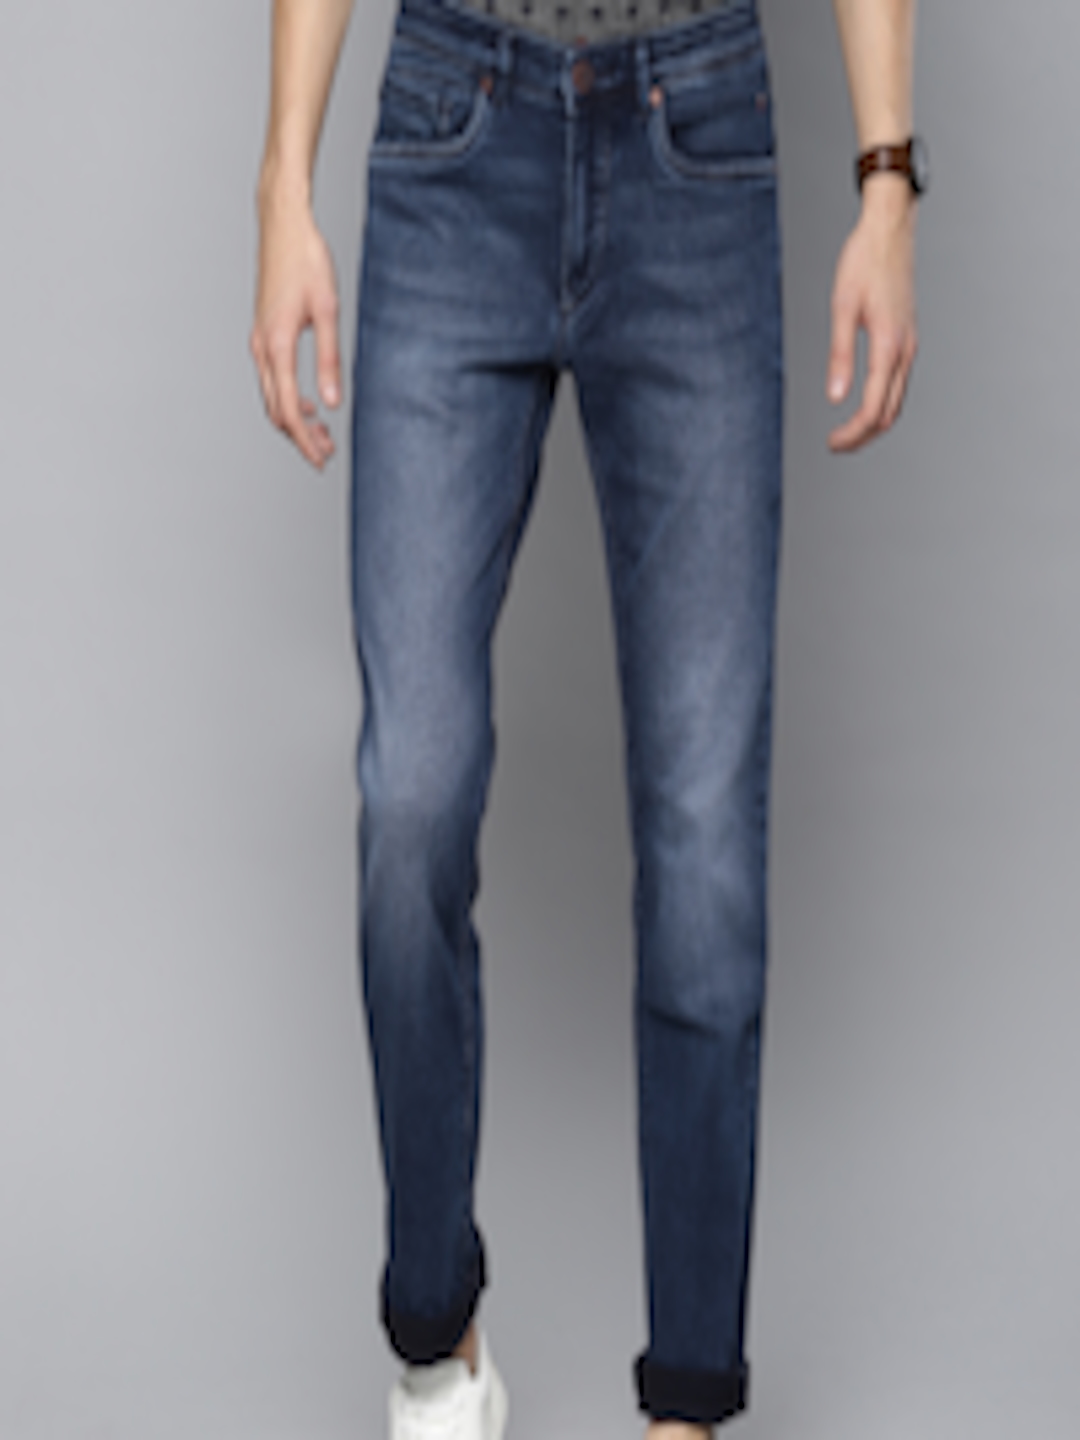 Buy Louis Philippe Jeans Men Blue Matt Slim Fit Low Rise Clean Look Stretchable Jeans - Jeans ...